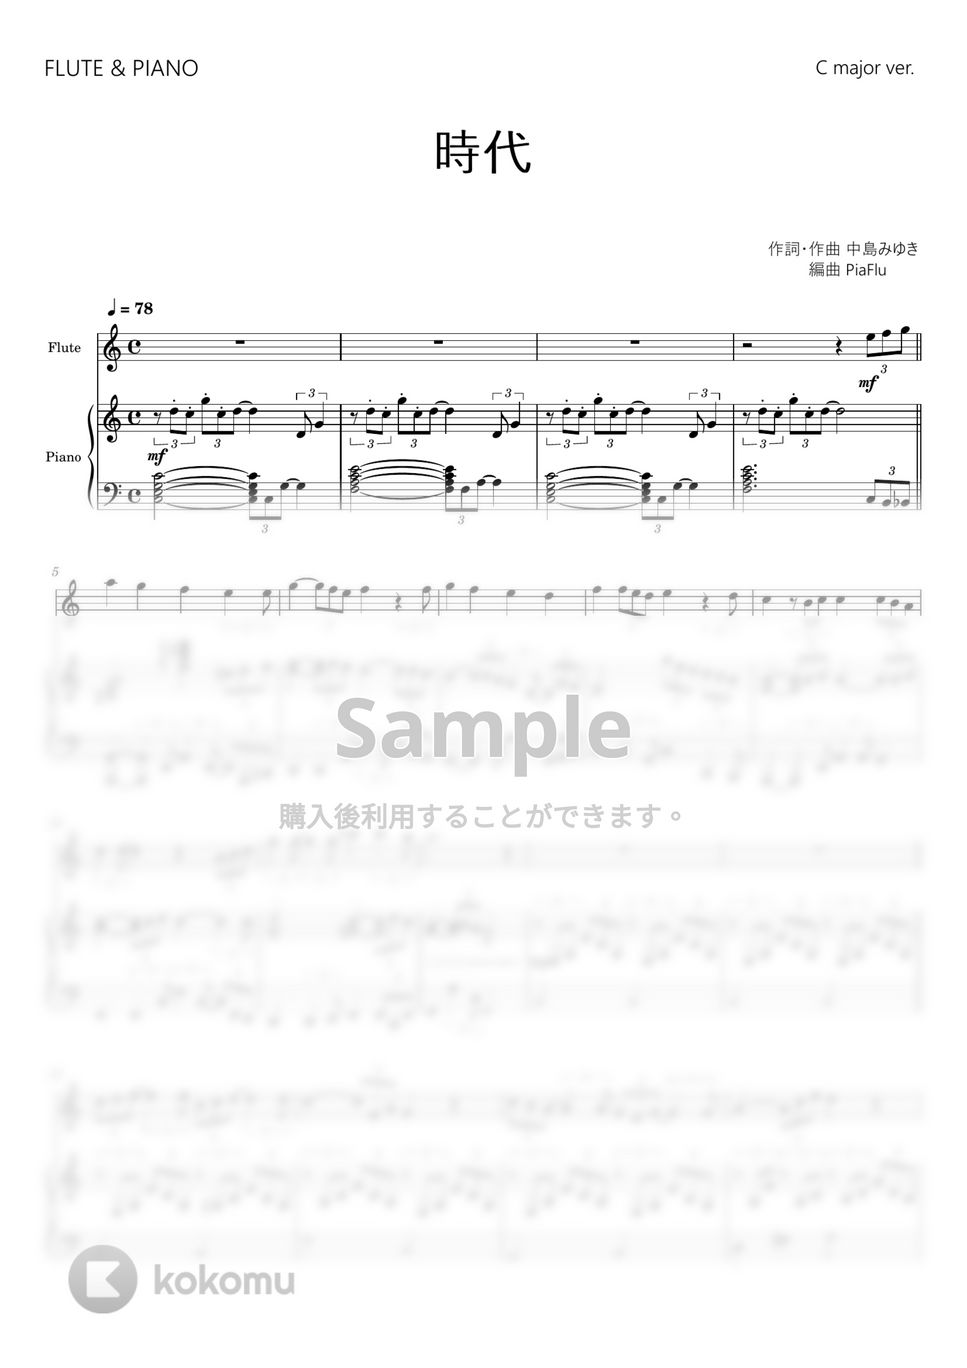 中島みゆき - 時代 (フルート&ピアノ伴奏 / Cメジャー ver.) by PiaFlu